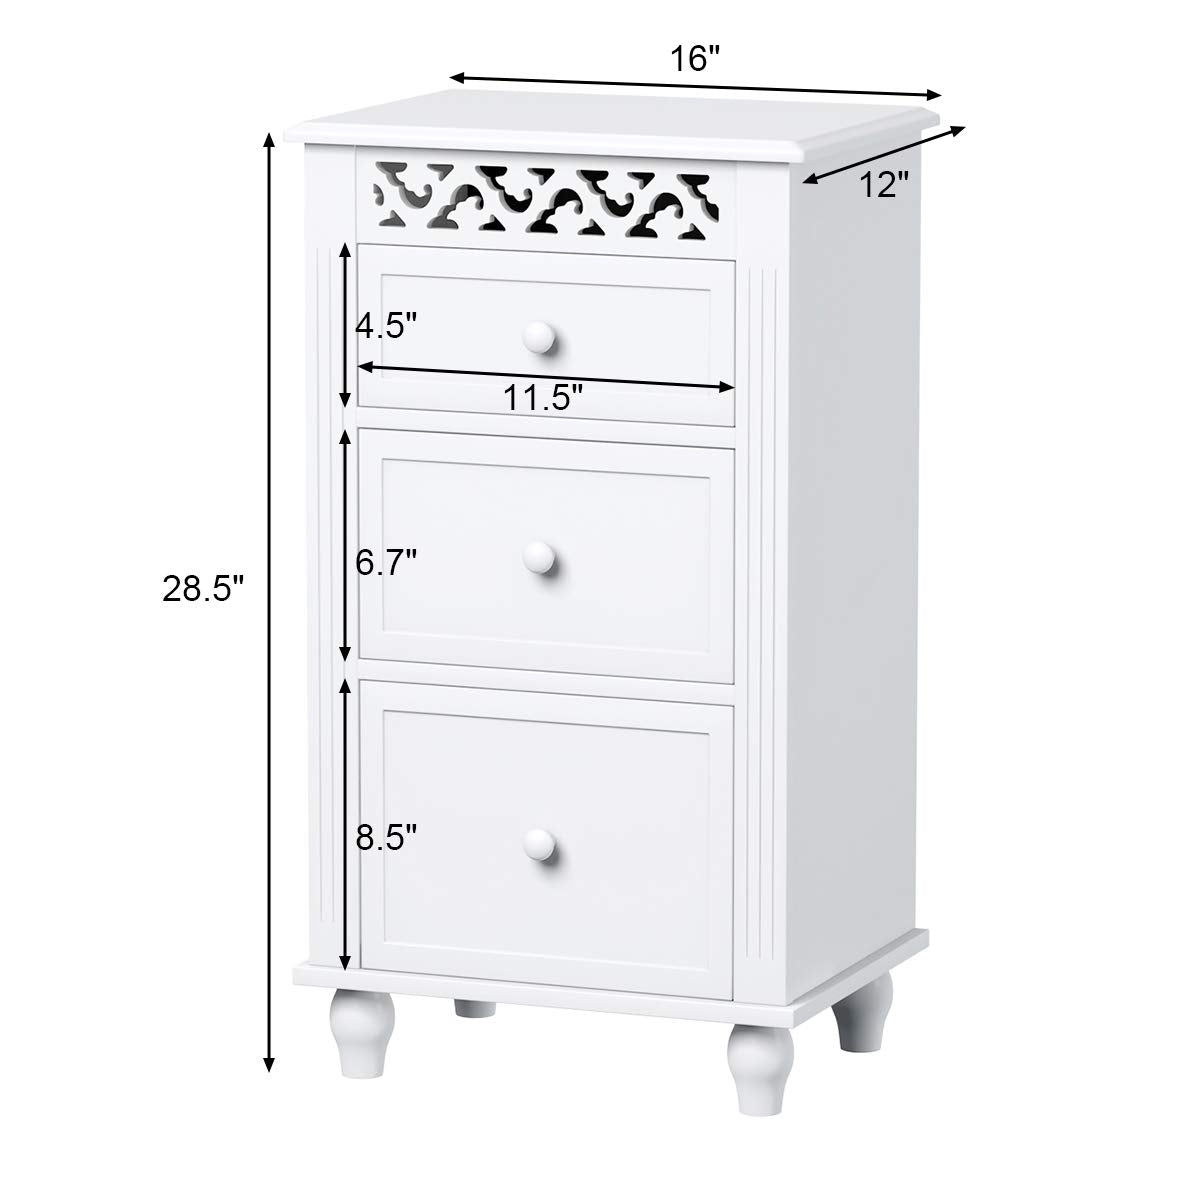 Giantex Storage Floor Cabinet W/ 3 Drawers Wood Bathroom Cupboard Organizer